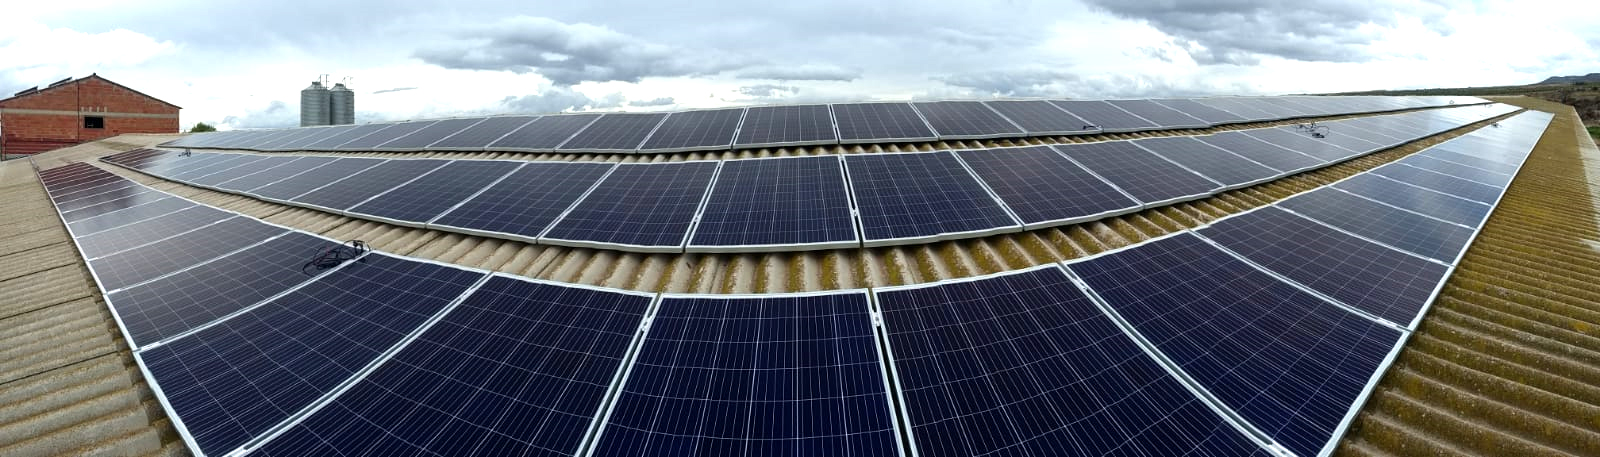 cubierta en granja con más de 150 placas solares fotovoltaicas para instalación de autoconsumo y ahorro energético mediante energías renovables